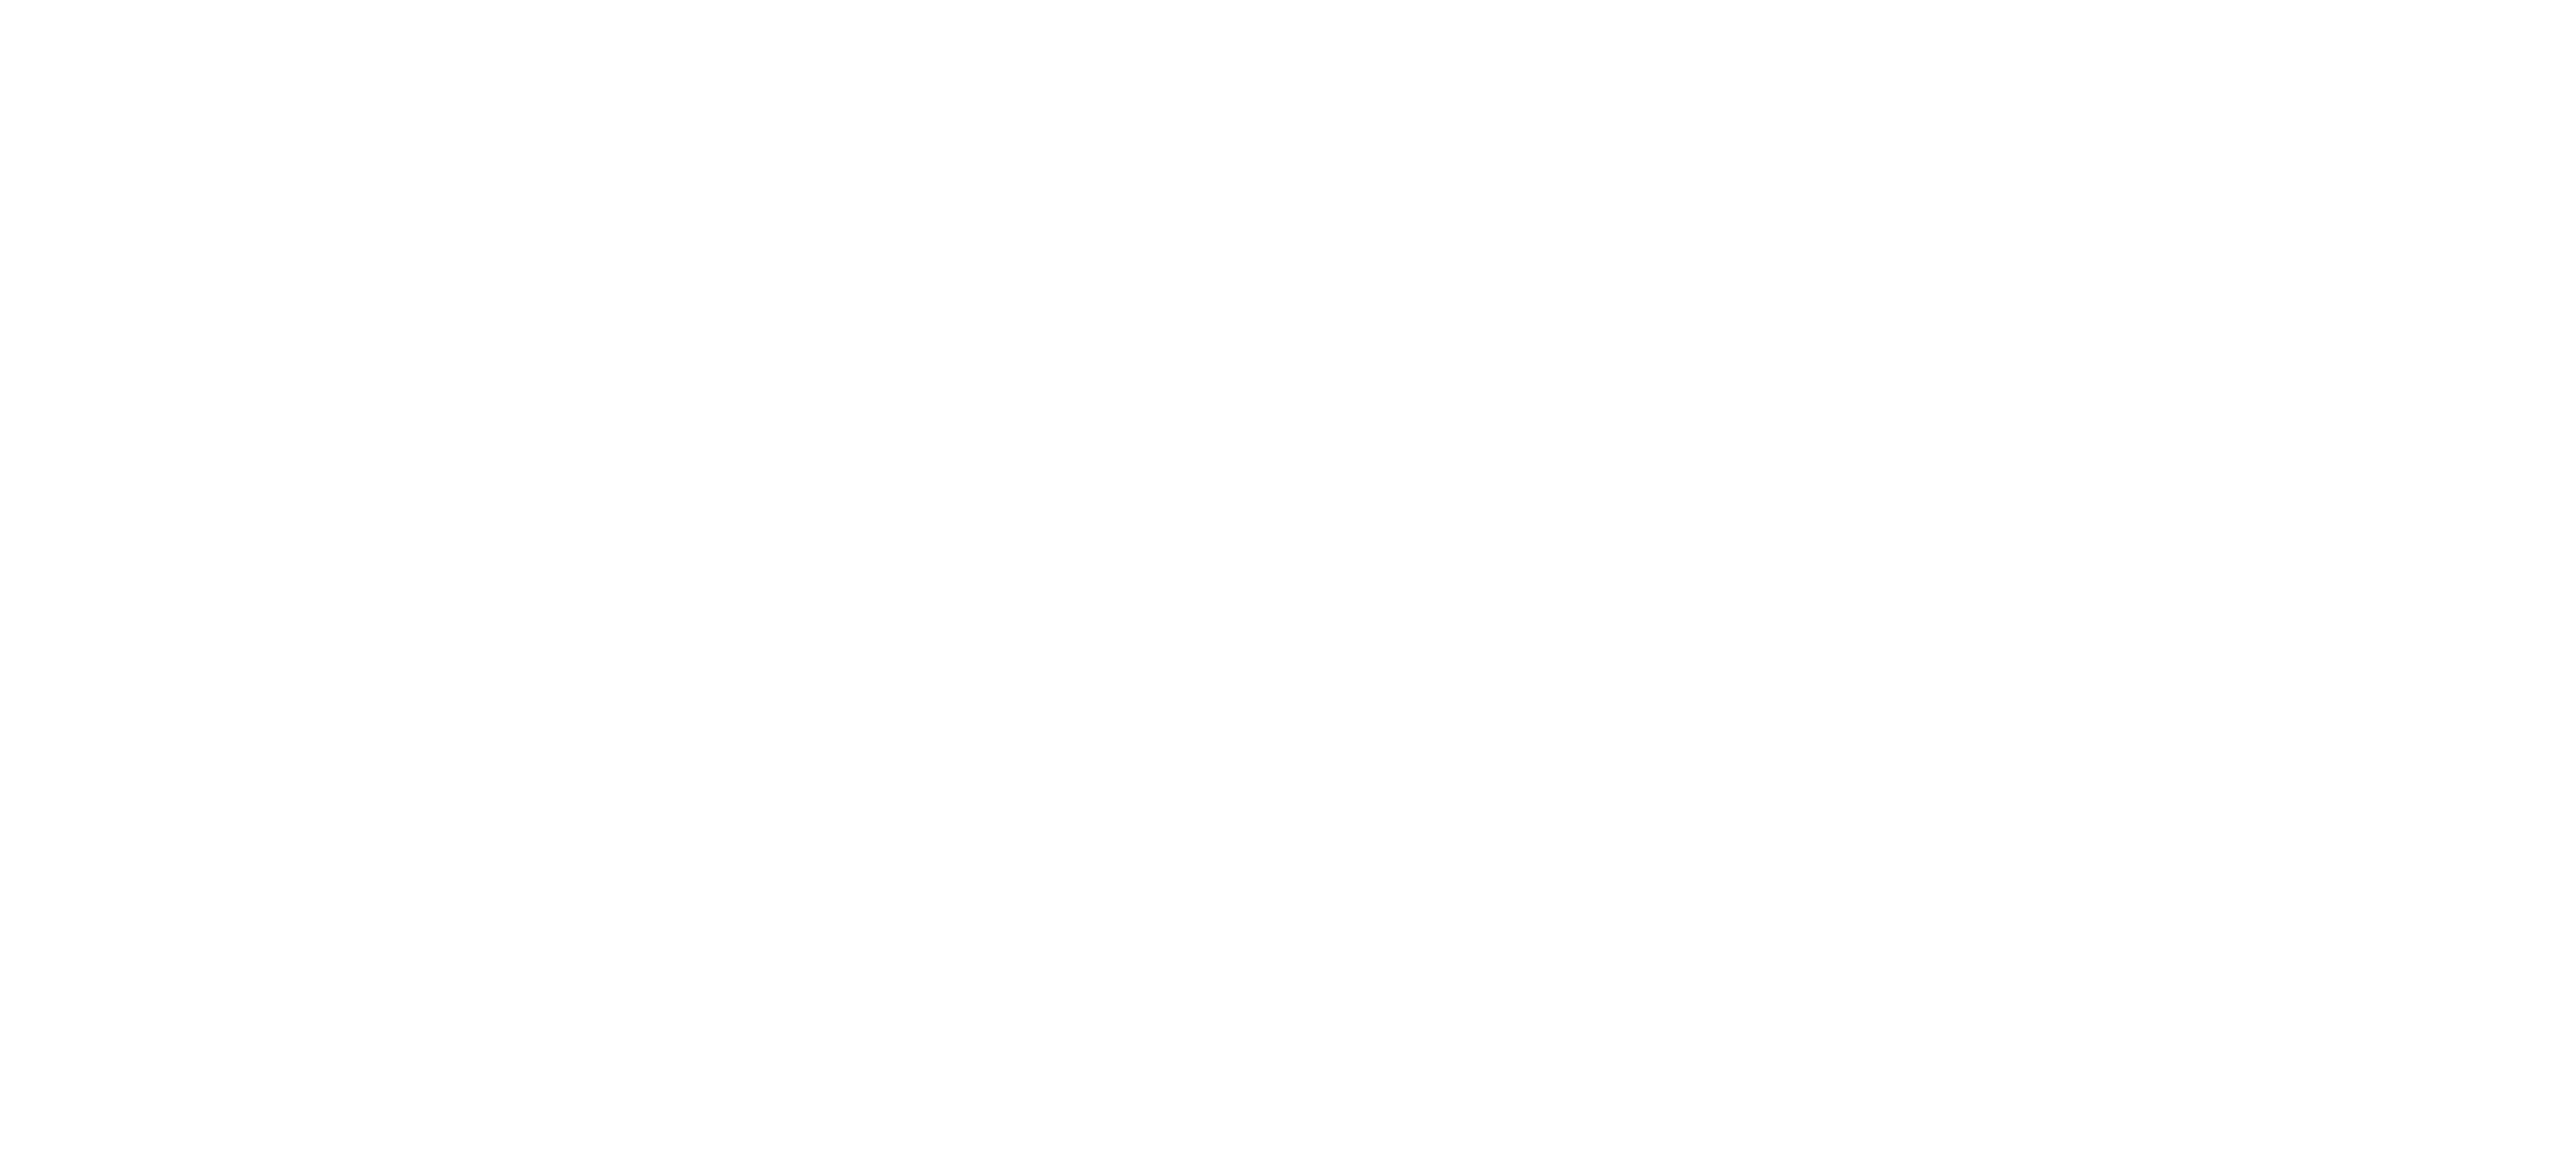 Universidad de la Ciudad de Aguascalientes